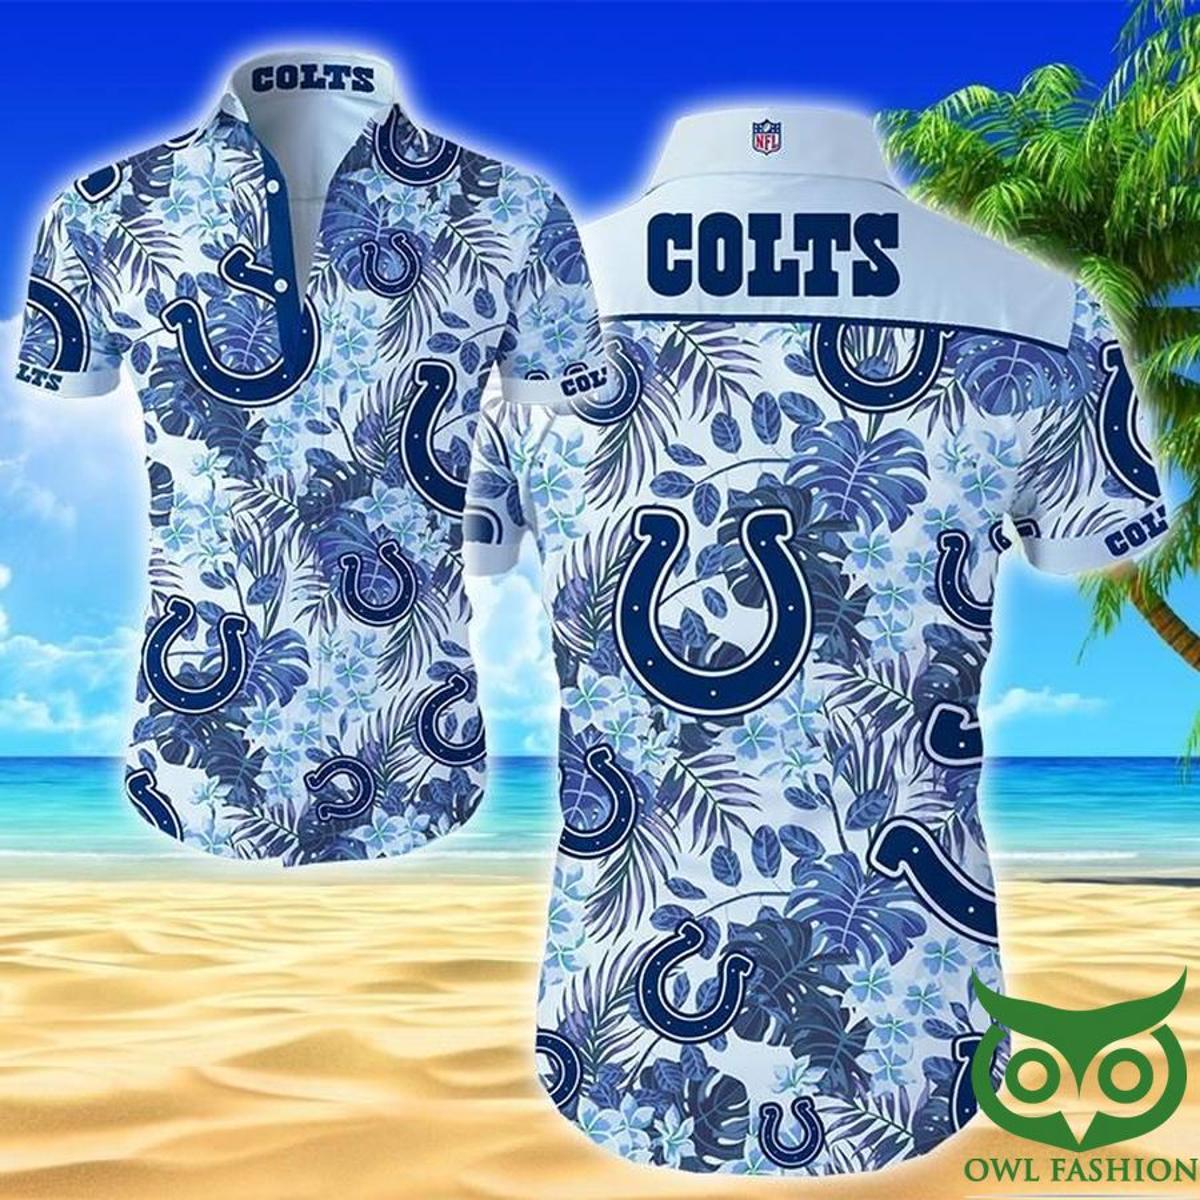 Indianapolis Colts Hawaiian Shirt Gifts Idea